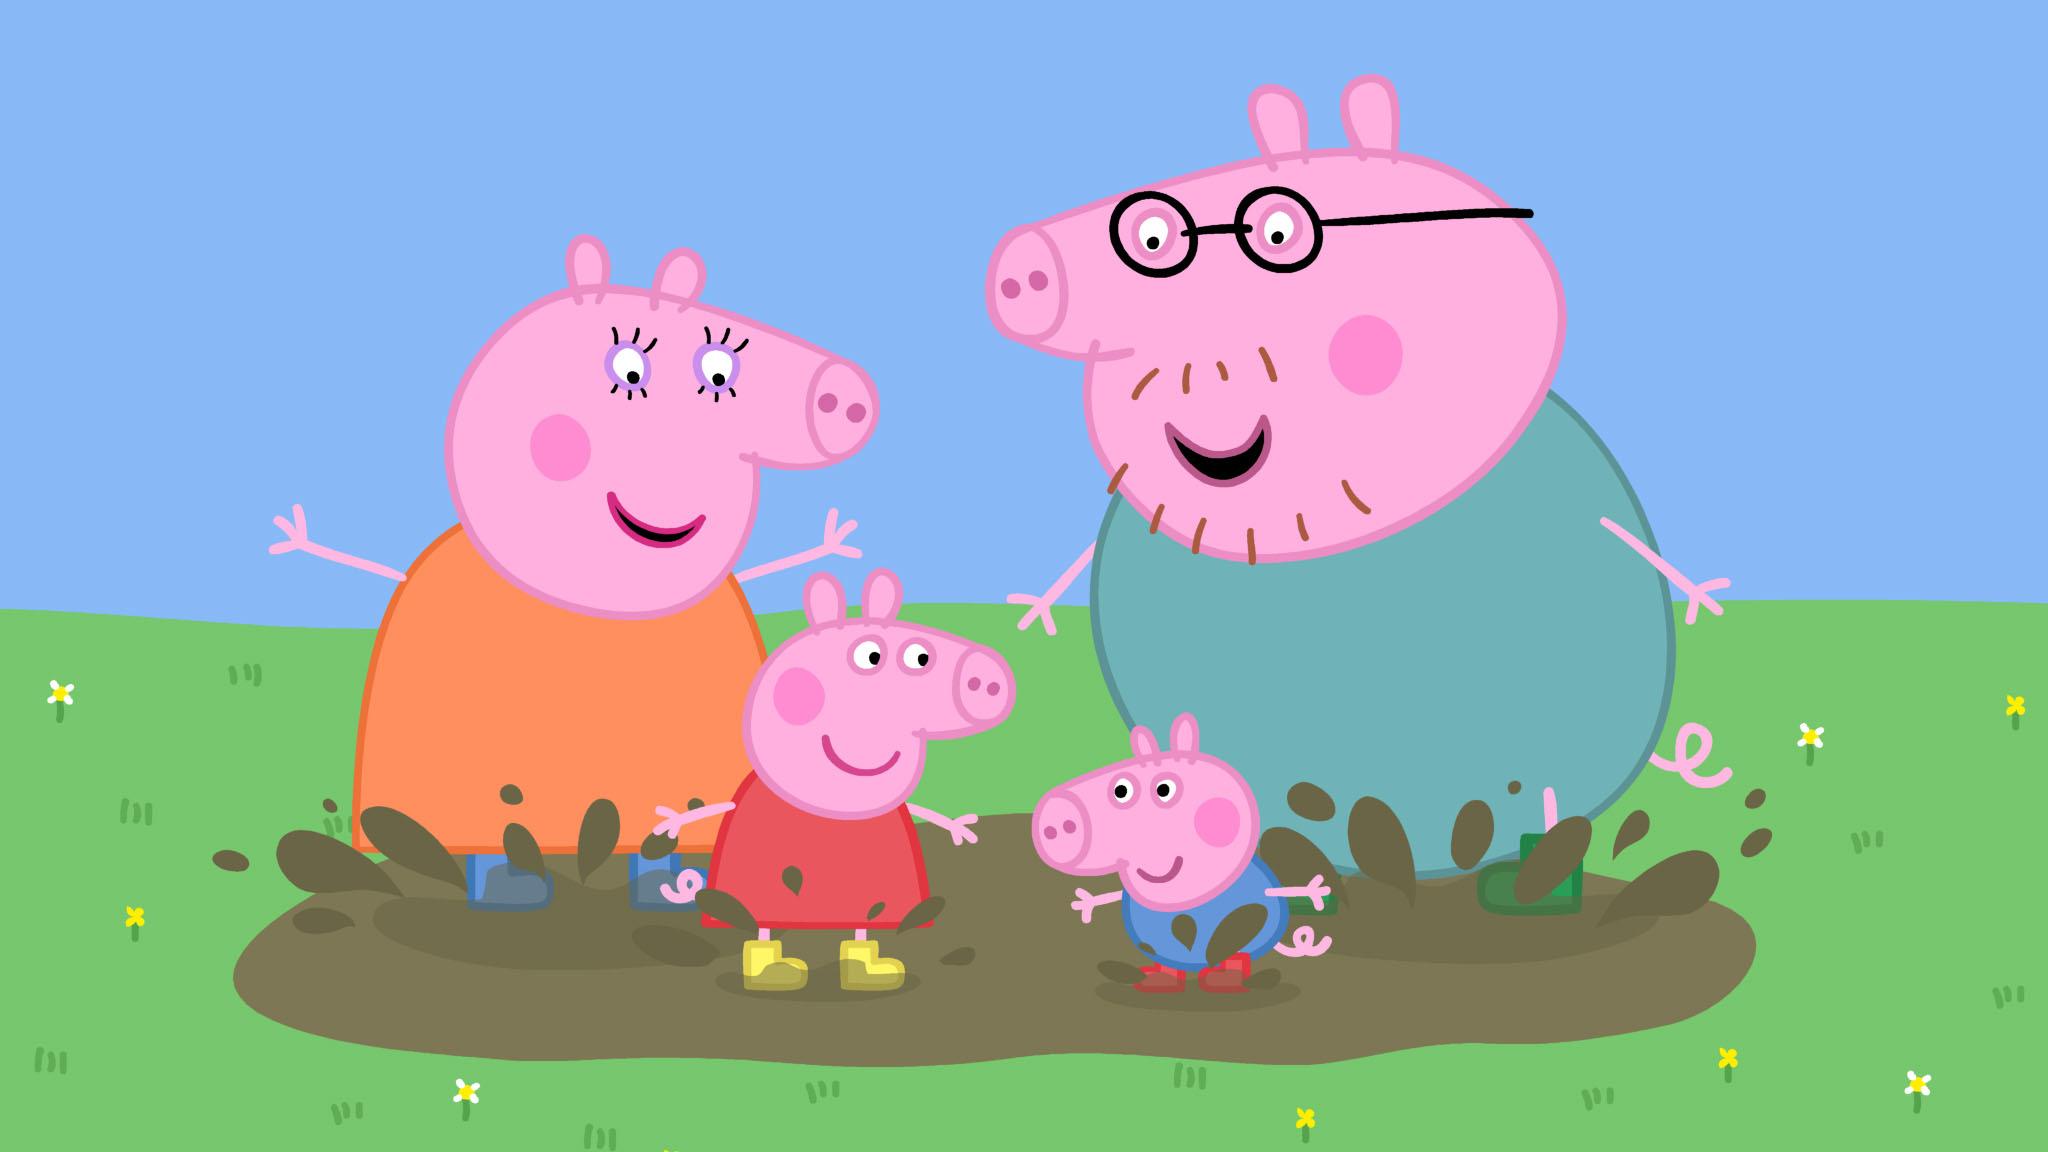 Peppa Pig introduz seu primeiro casal lésbico no desenho